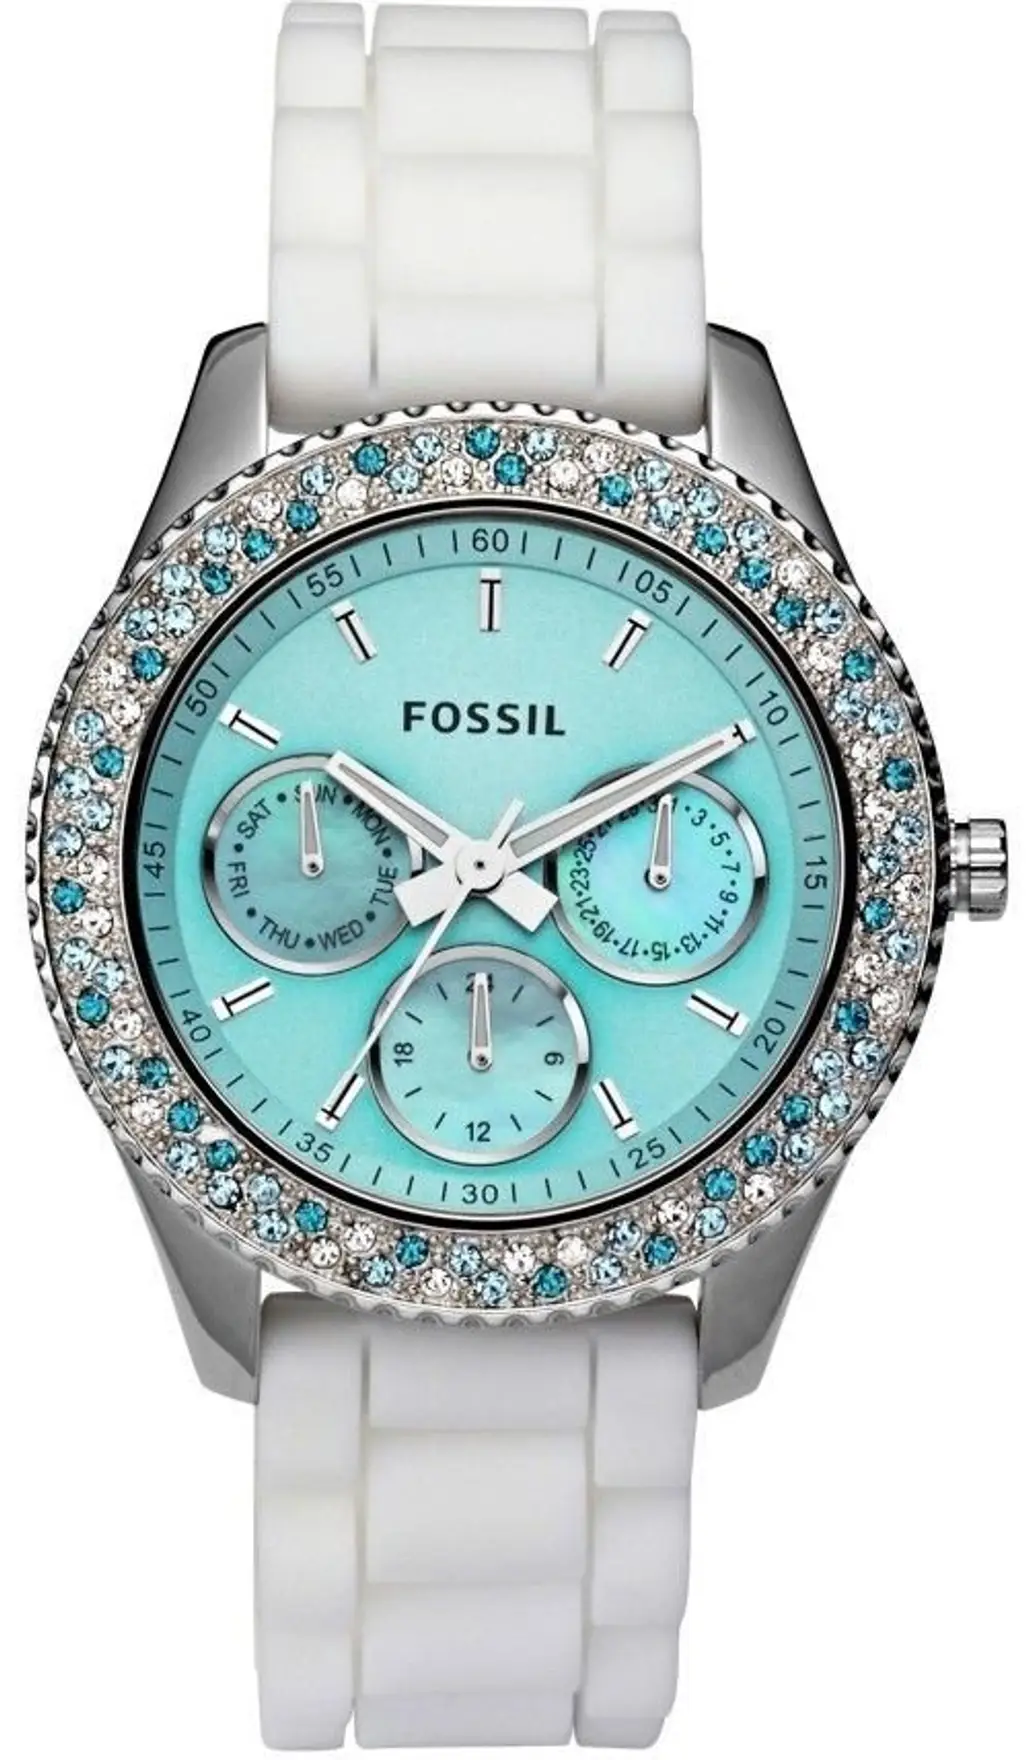 Tiffany Blue Fossil Watch